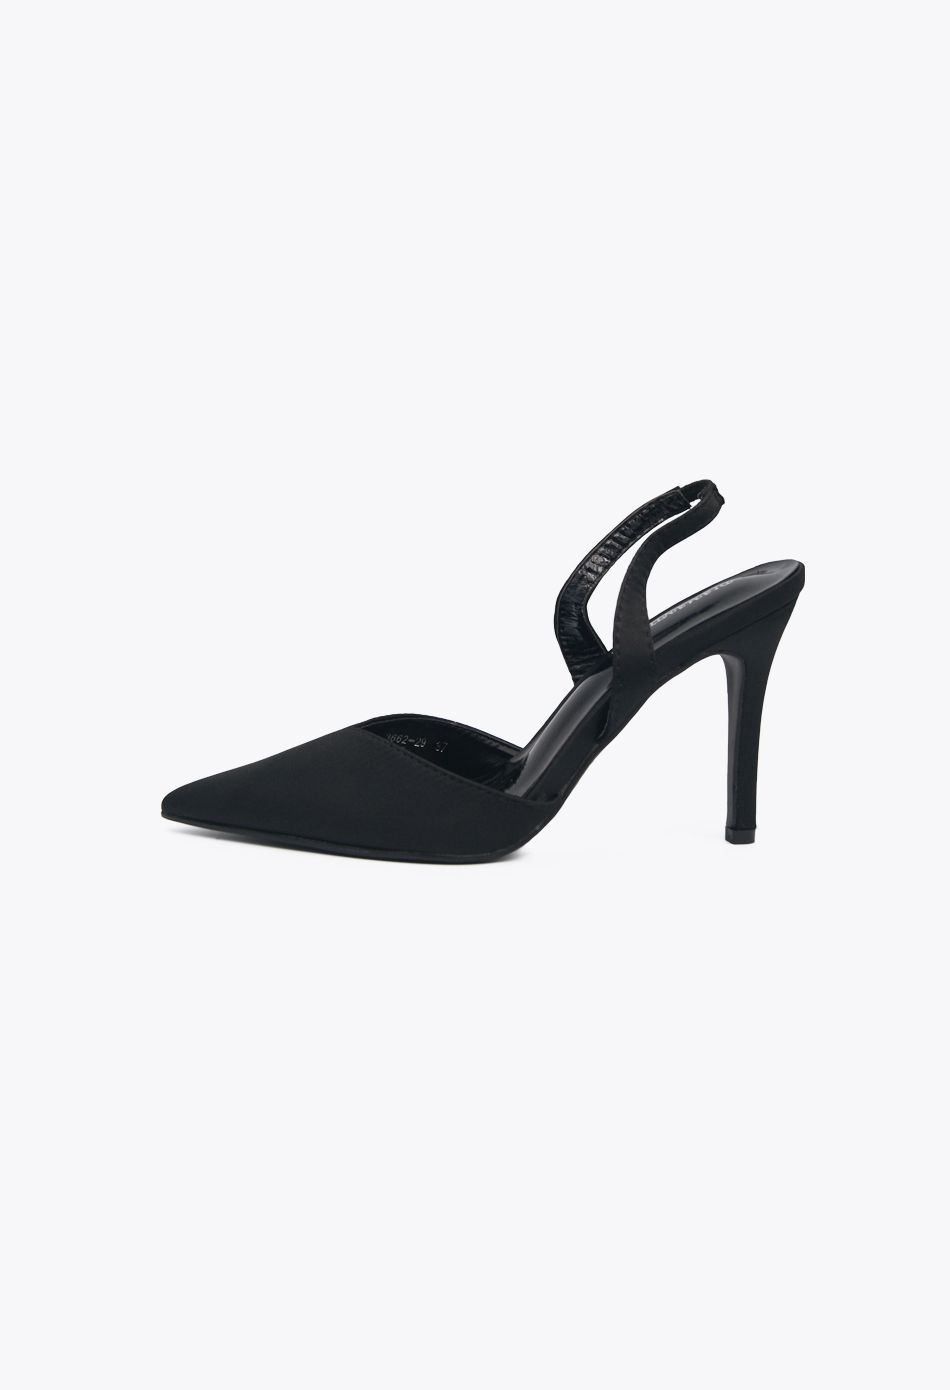 Πέδιλα με Μπαρέτα και Χοντρό Τακούνι Μαύρο (Μεγάλα Νούμερα 41, 42, 43, 44) / DMY192-1A-black Ανοιχτά Παπούτσια joya.gr